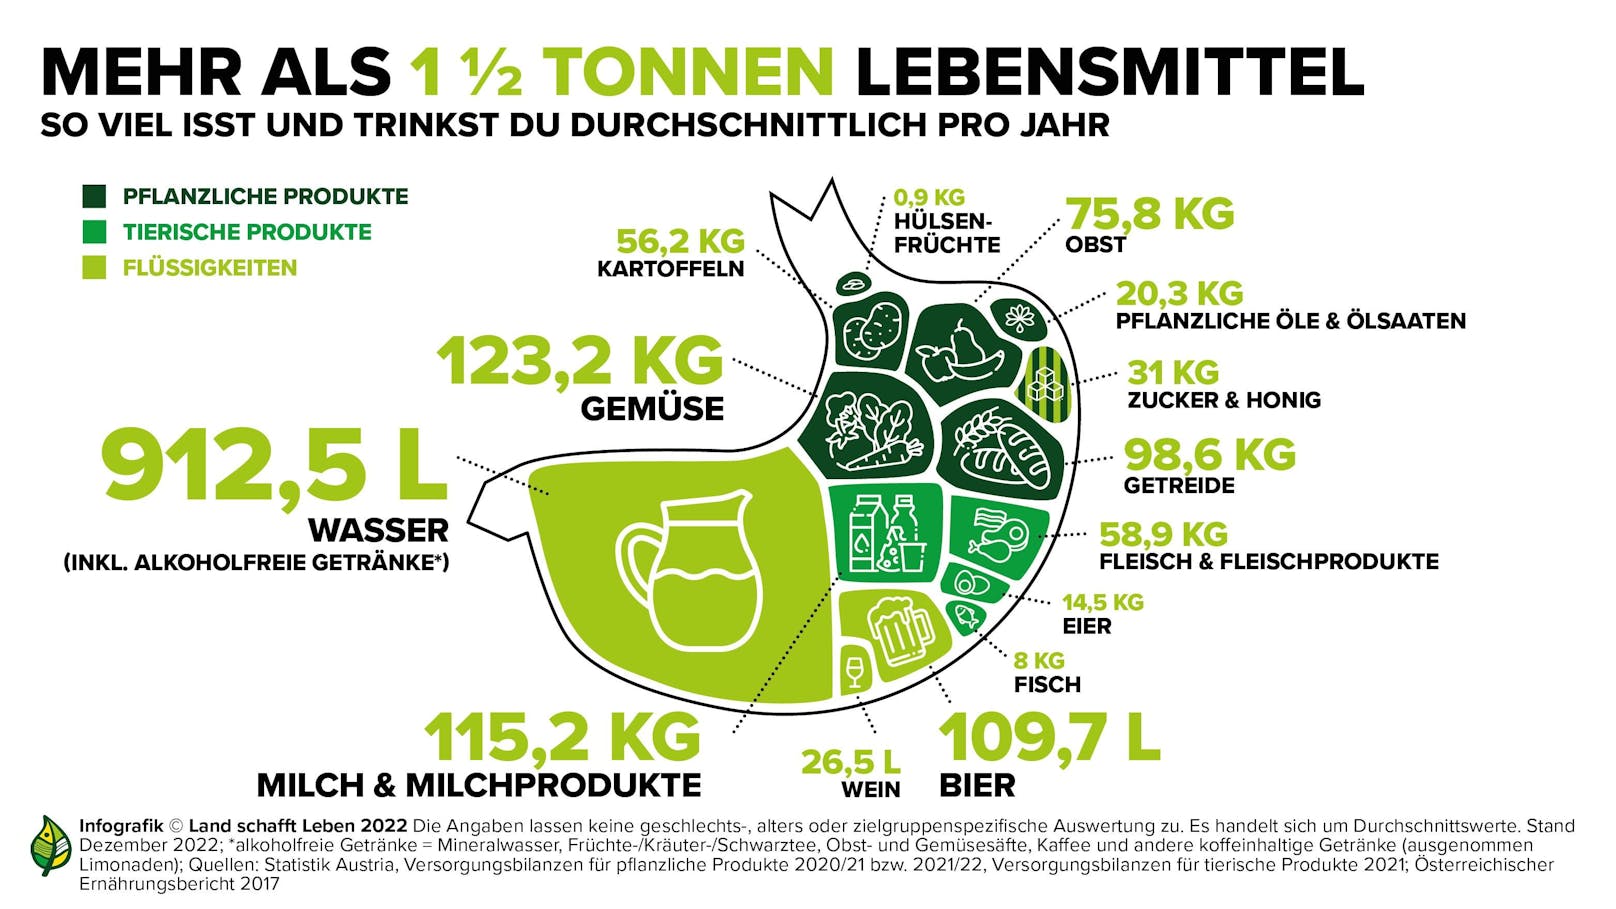 Was die Österreicher über das Jahr hinweg durchschnittlich essen